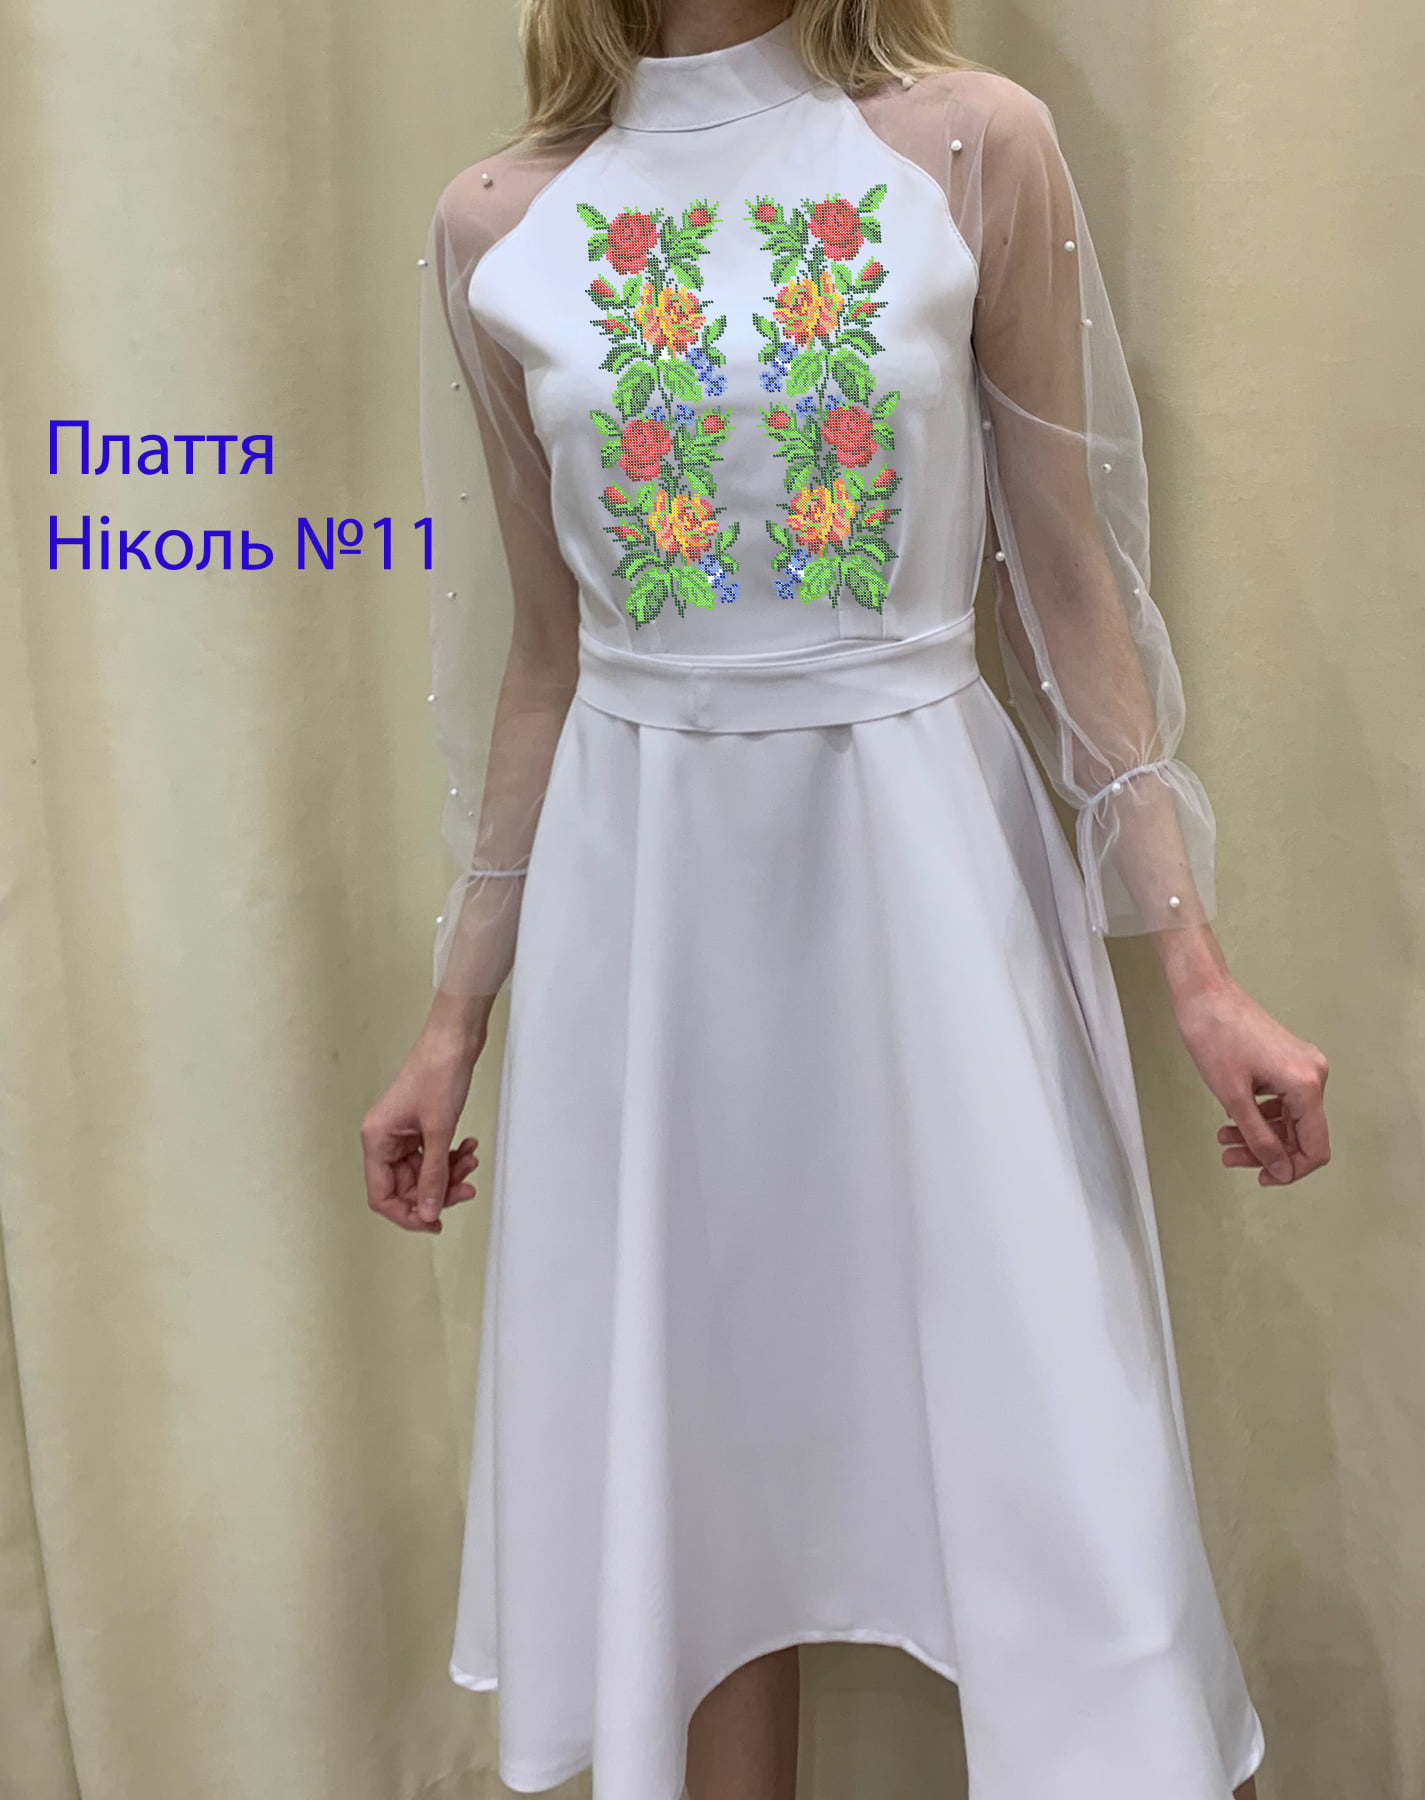 Пошита жіноча сукня для вишивки Ніколь №11